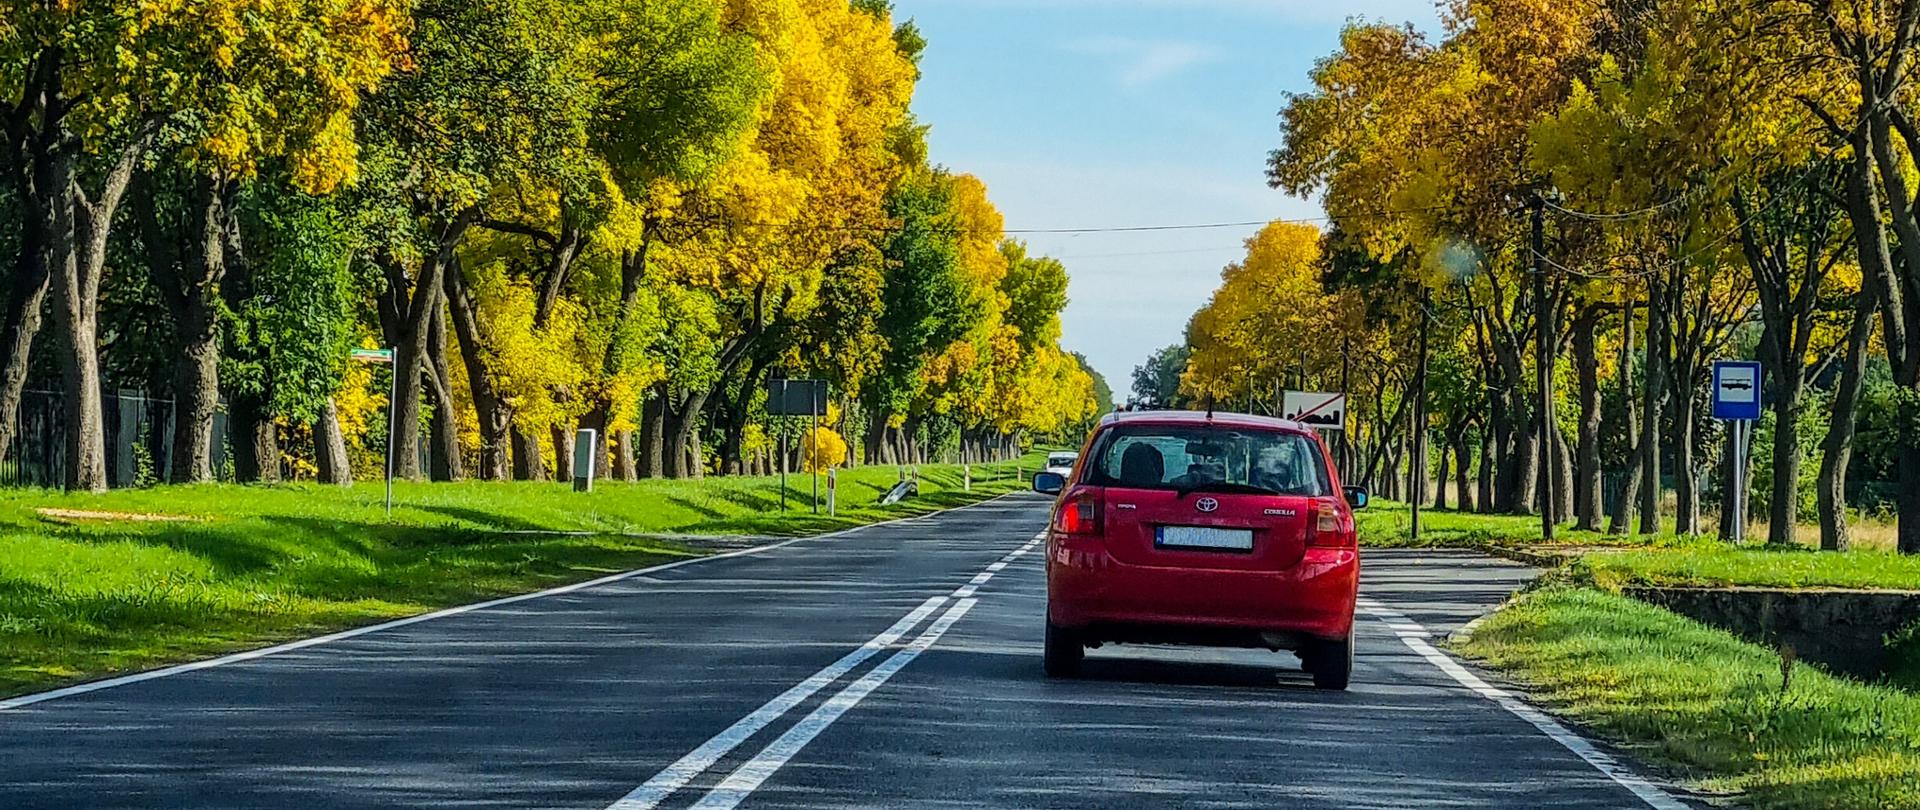 Droga jednojezdniowa w otoczeniu drzew w jesiennym słonecznym klimacie. Na drodze czerwony samochód osobowy.